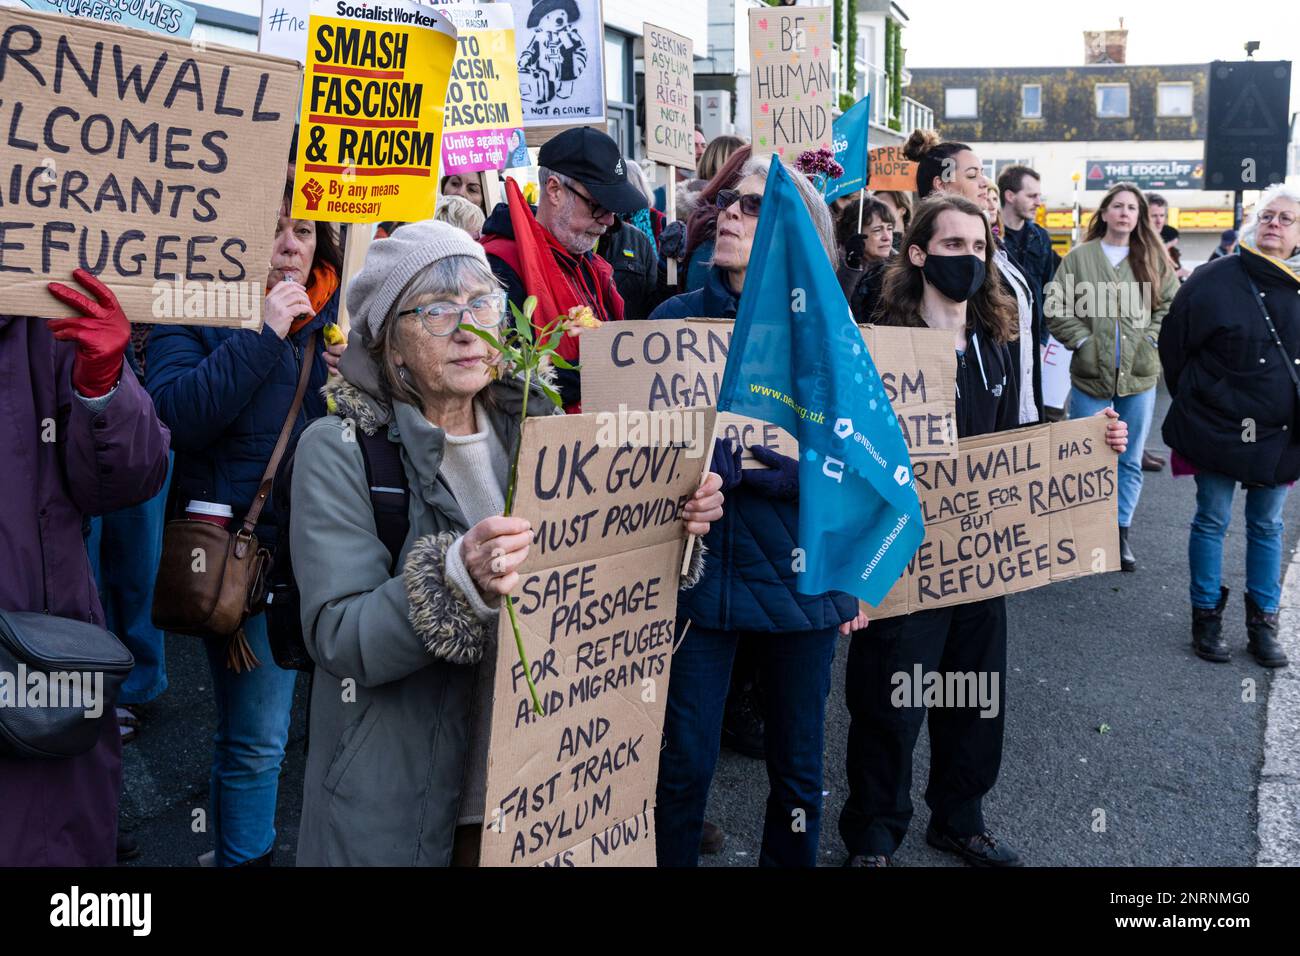 Una contro-manifestazione organizzata da gruppi antifascisti contro una protesta del gruppo di destra riforma del Regno Unito contro i richiedenti asilo collocati nel Bere Foto Stock